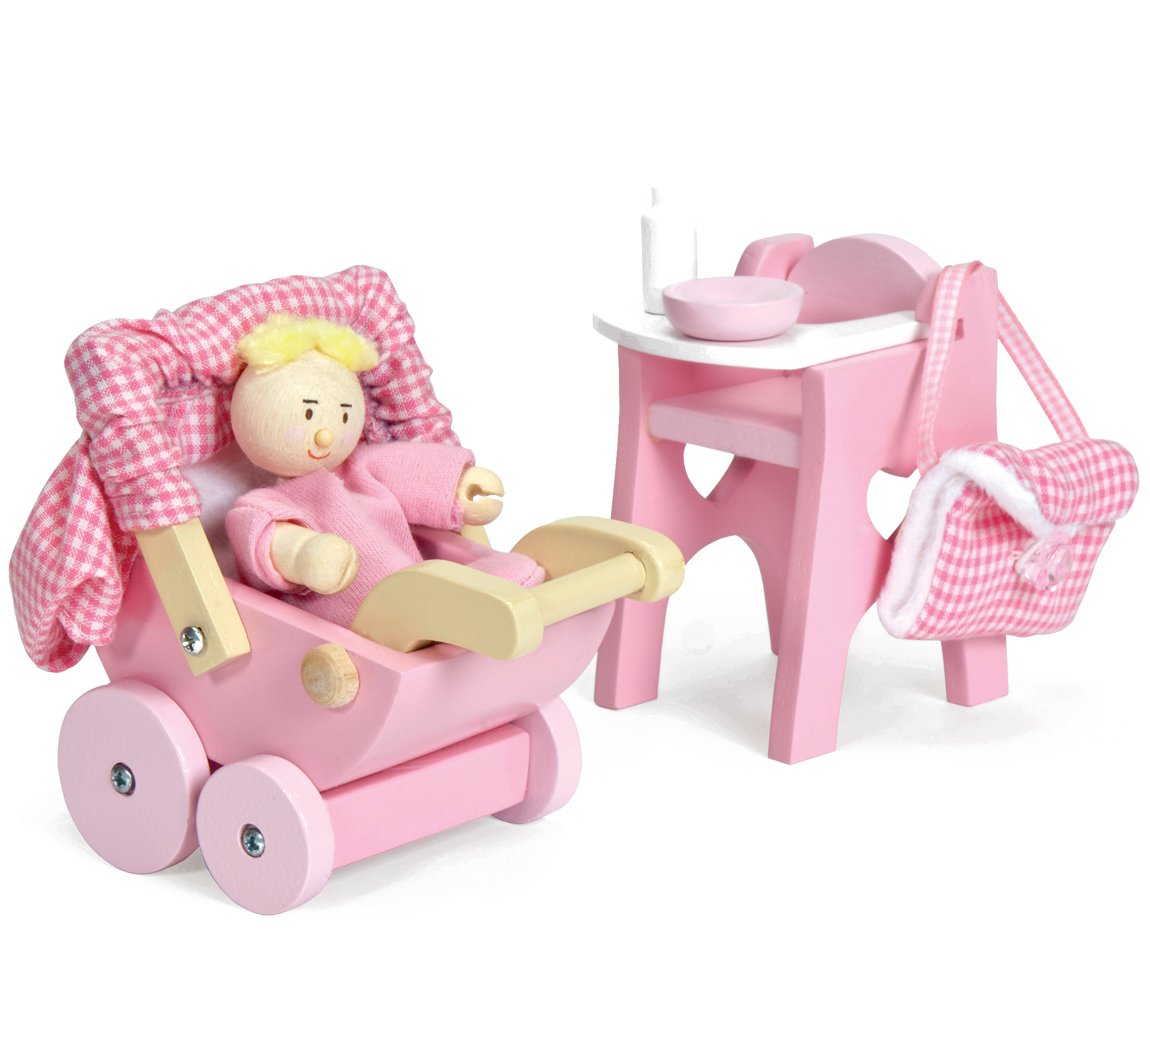 Le Toy Van – Dukkehus Puslesæt med babydukke